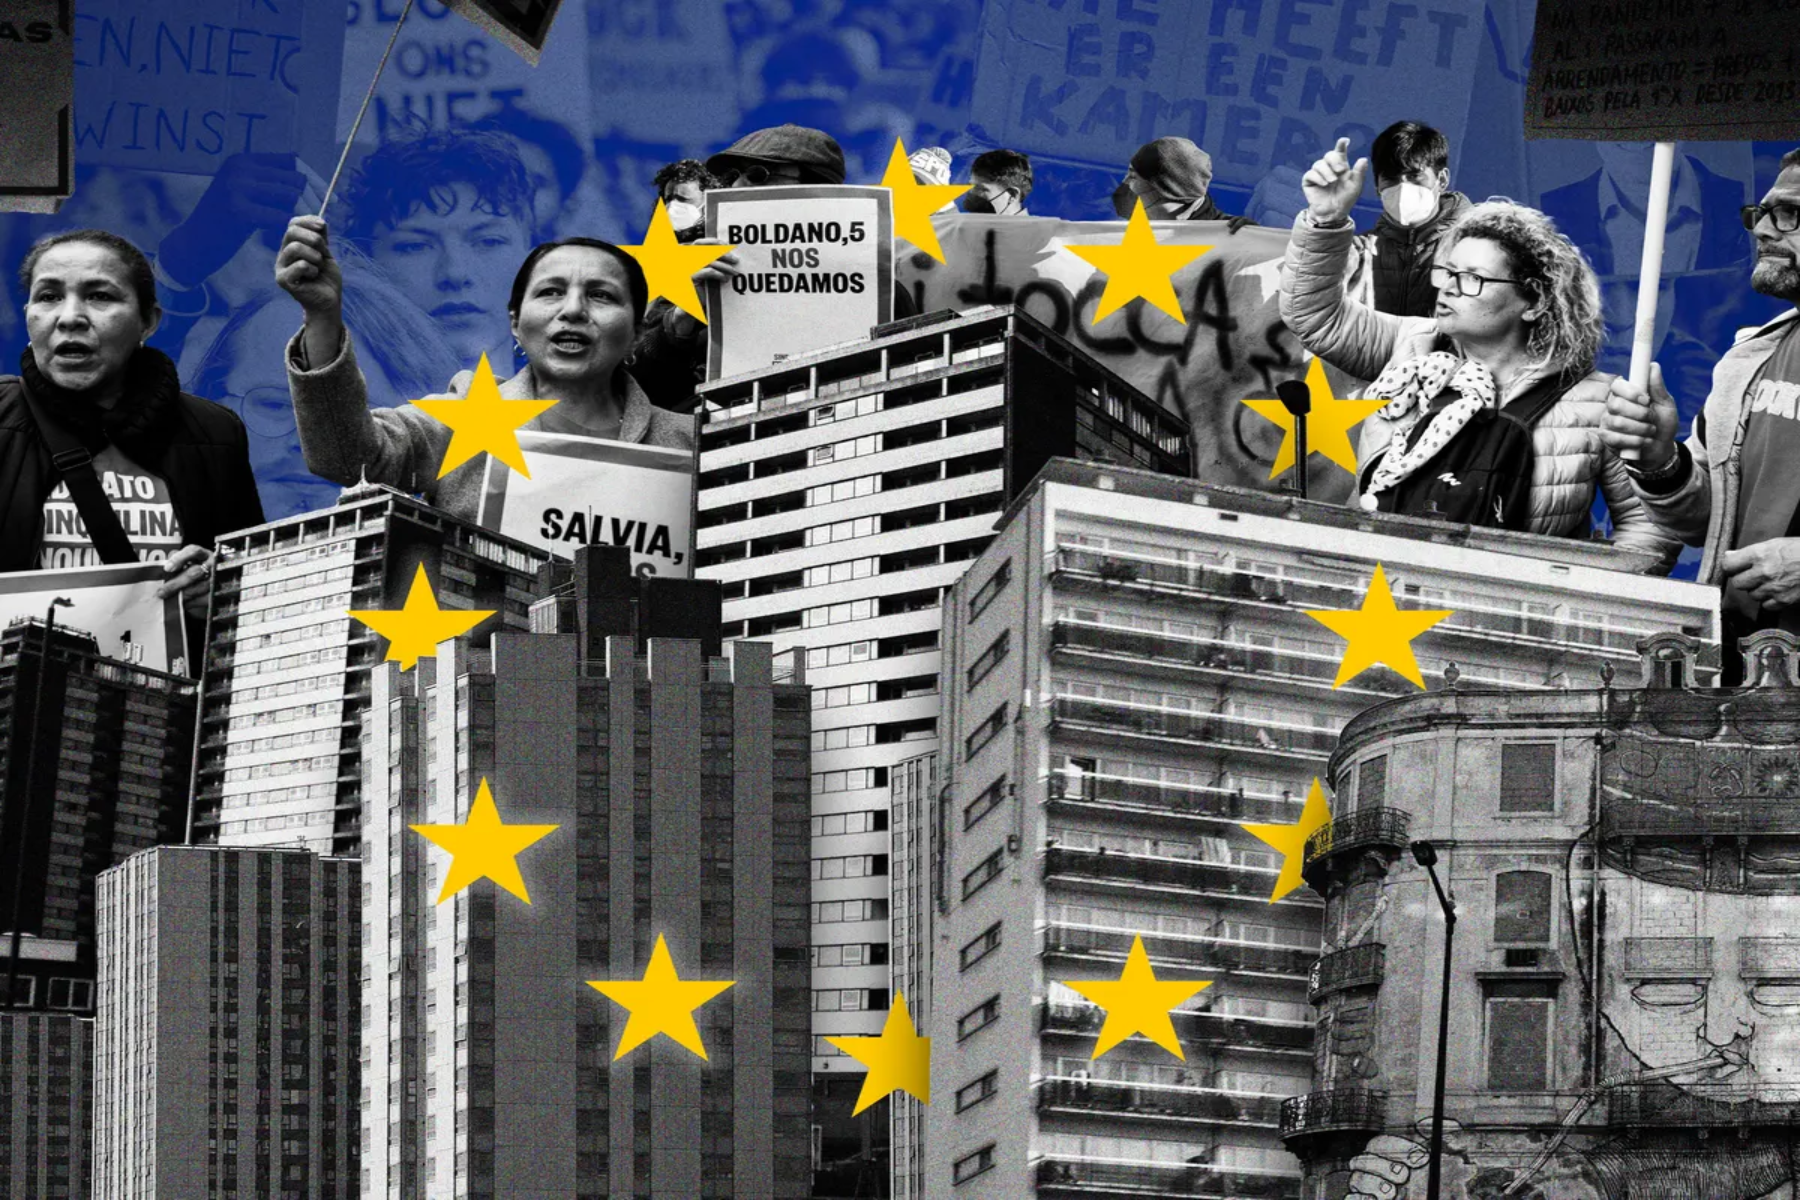 Ευρώπη κατοικίες: Στον δρόμο πολλοί διαδηλωτές στην Ευρώπη για έλλειψη φθηνών κατοικιών